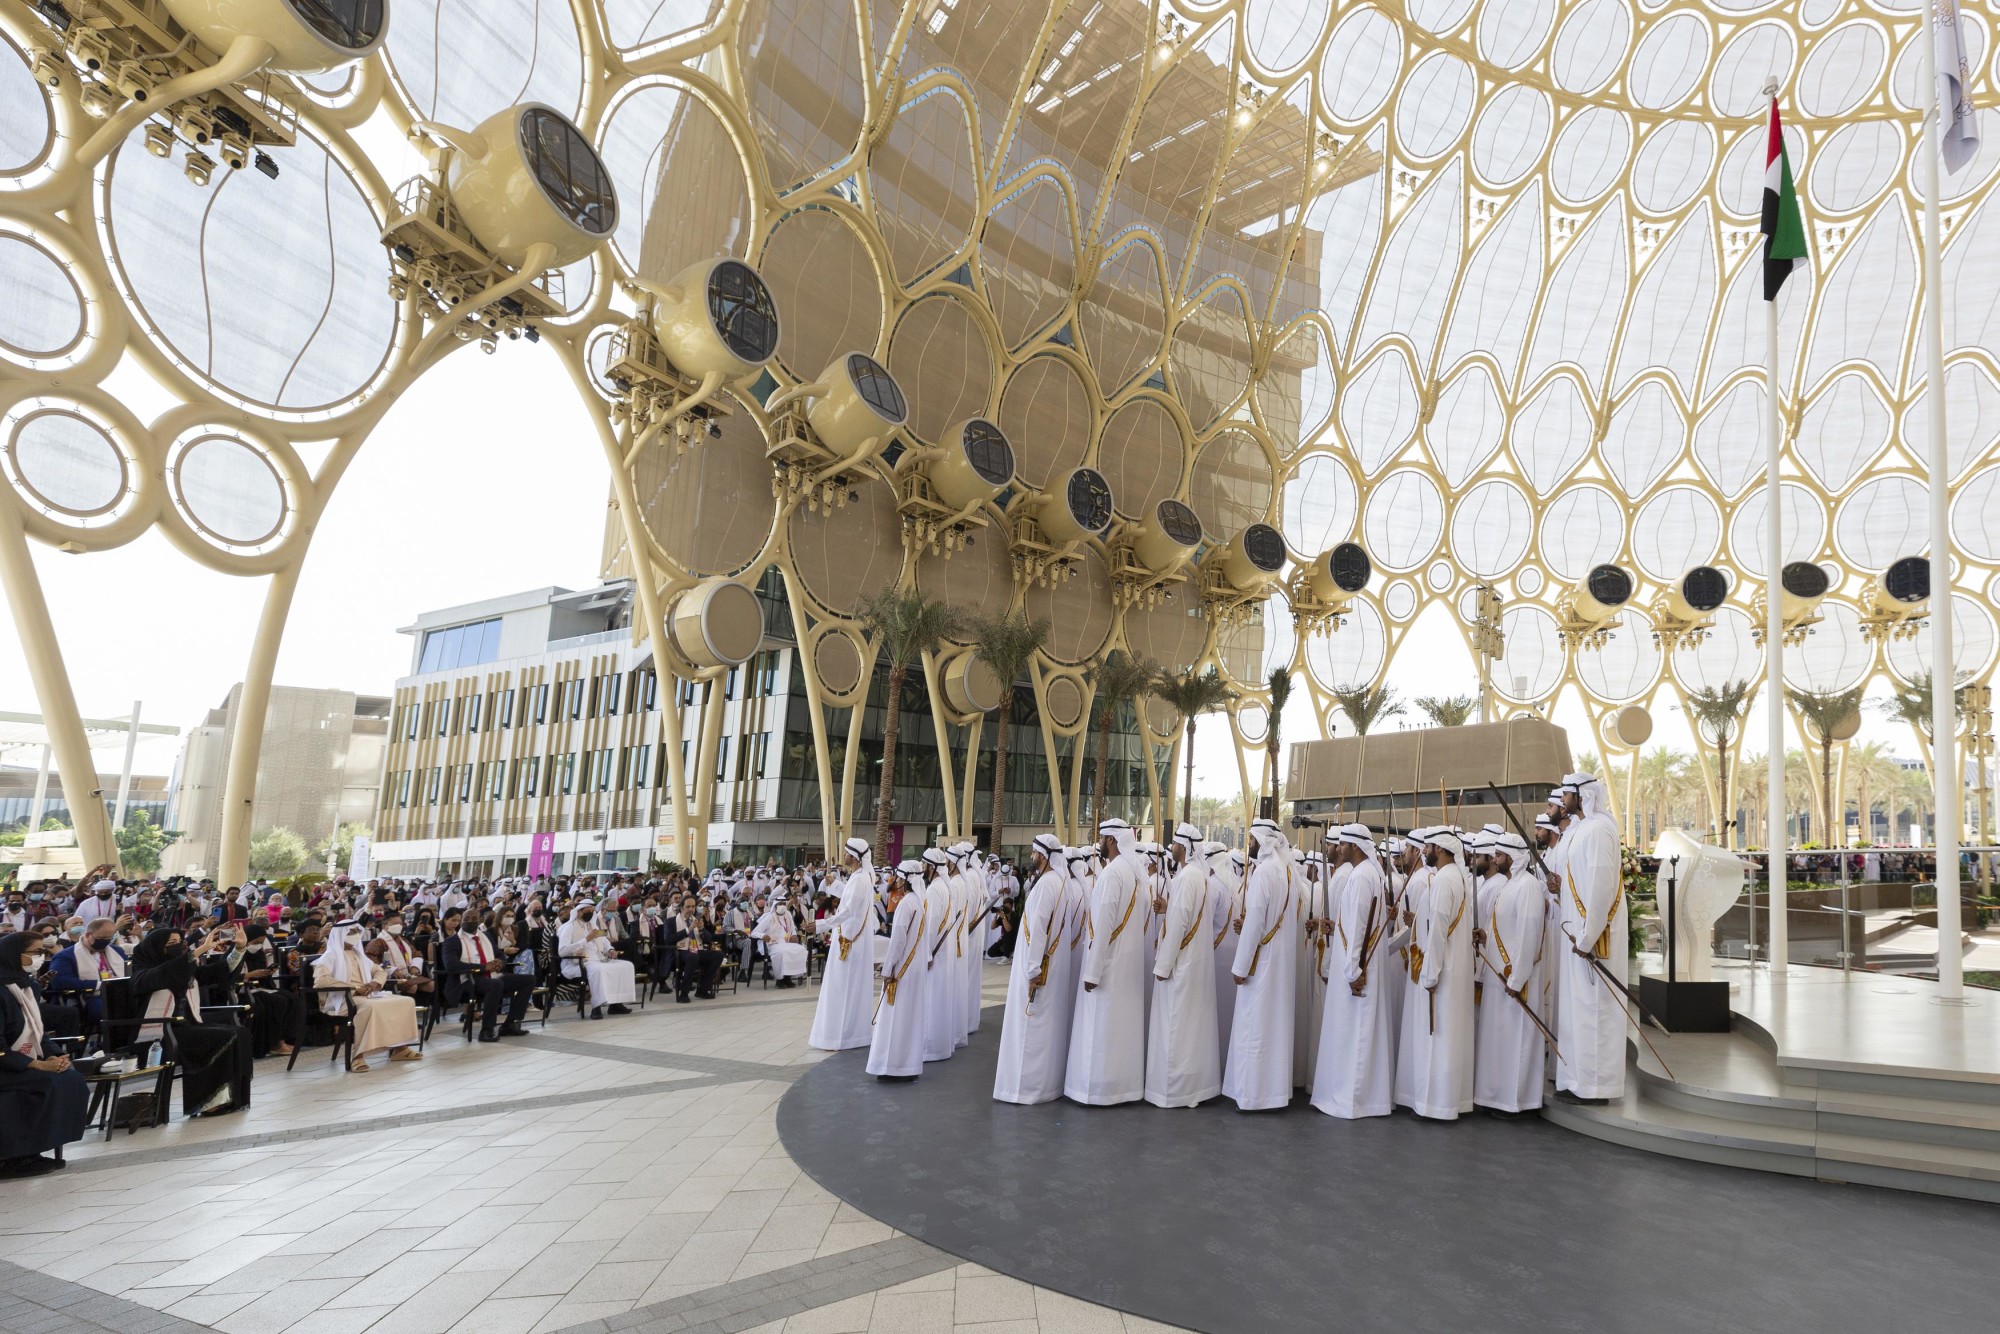 Al Azi Cultural Performance by Al Wasmy during UAE National Day at Al Wasl m15716